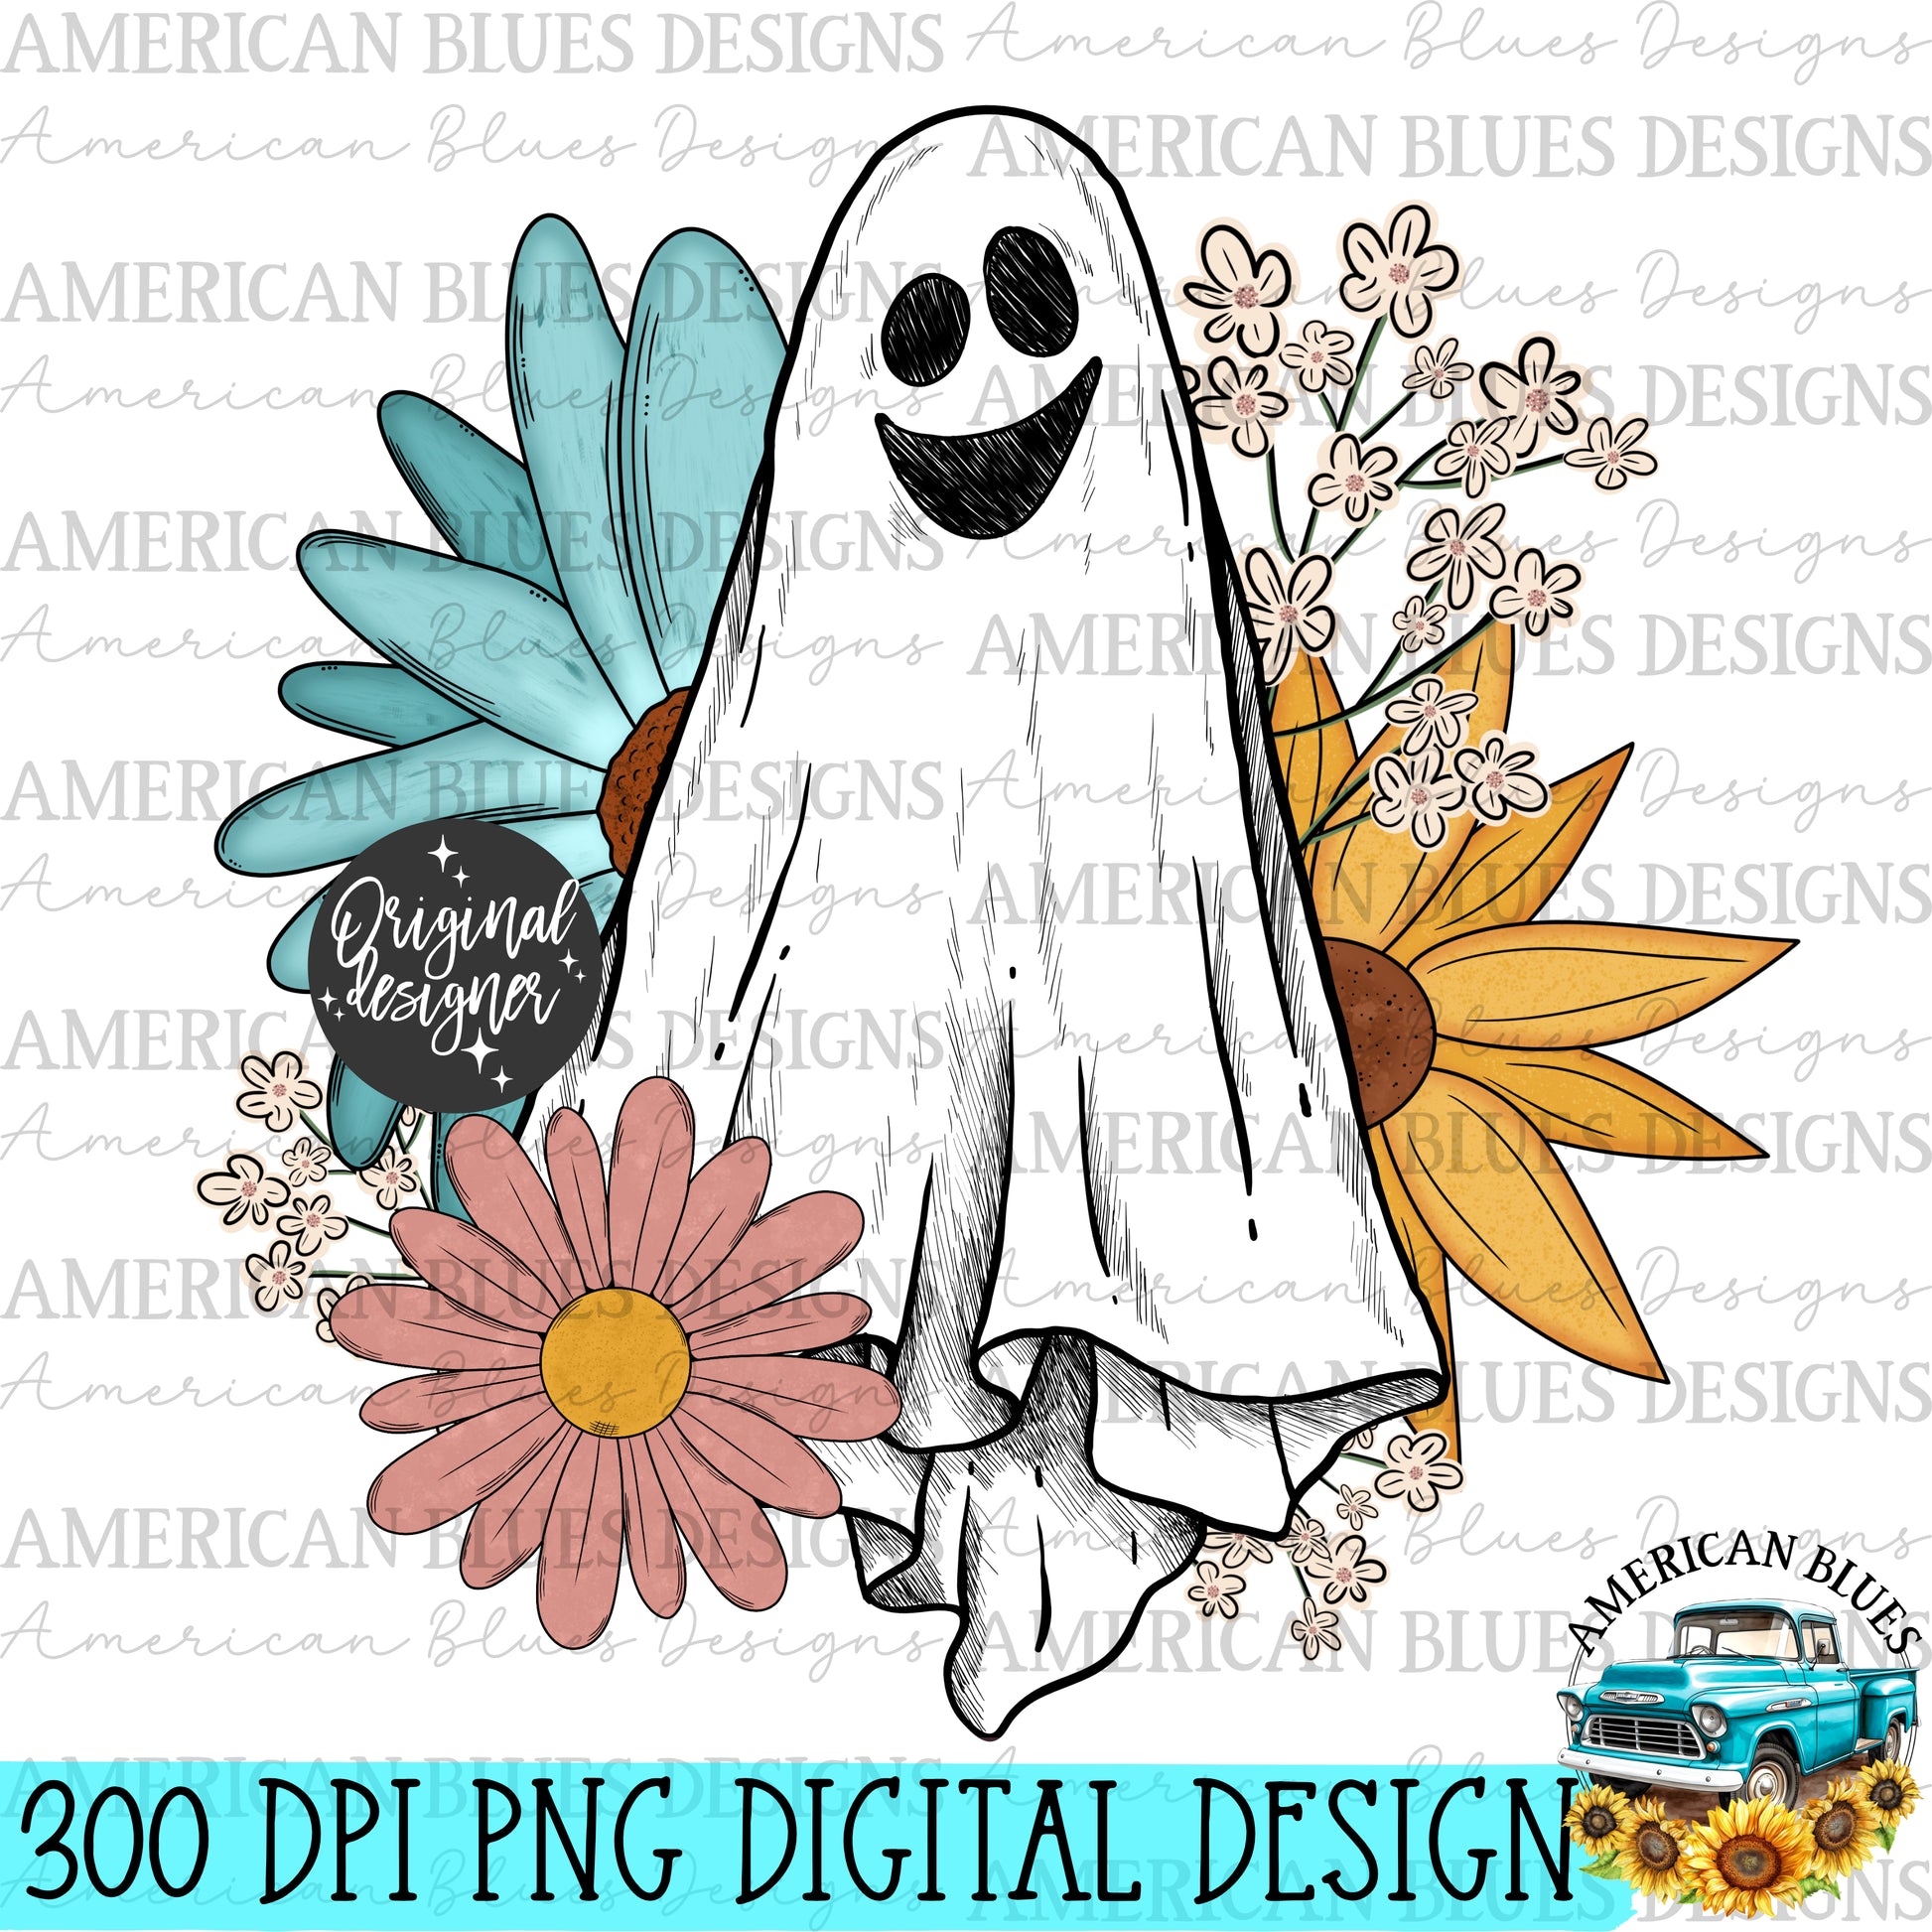 "Oliver the ghostie & florals" digital design | American Blues Design